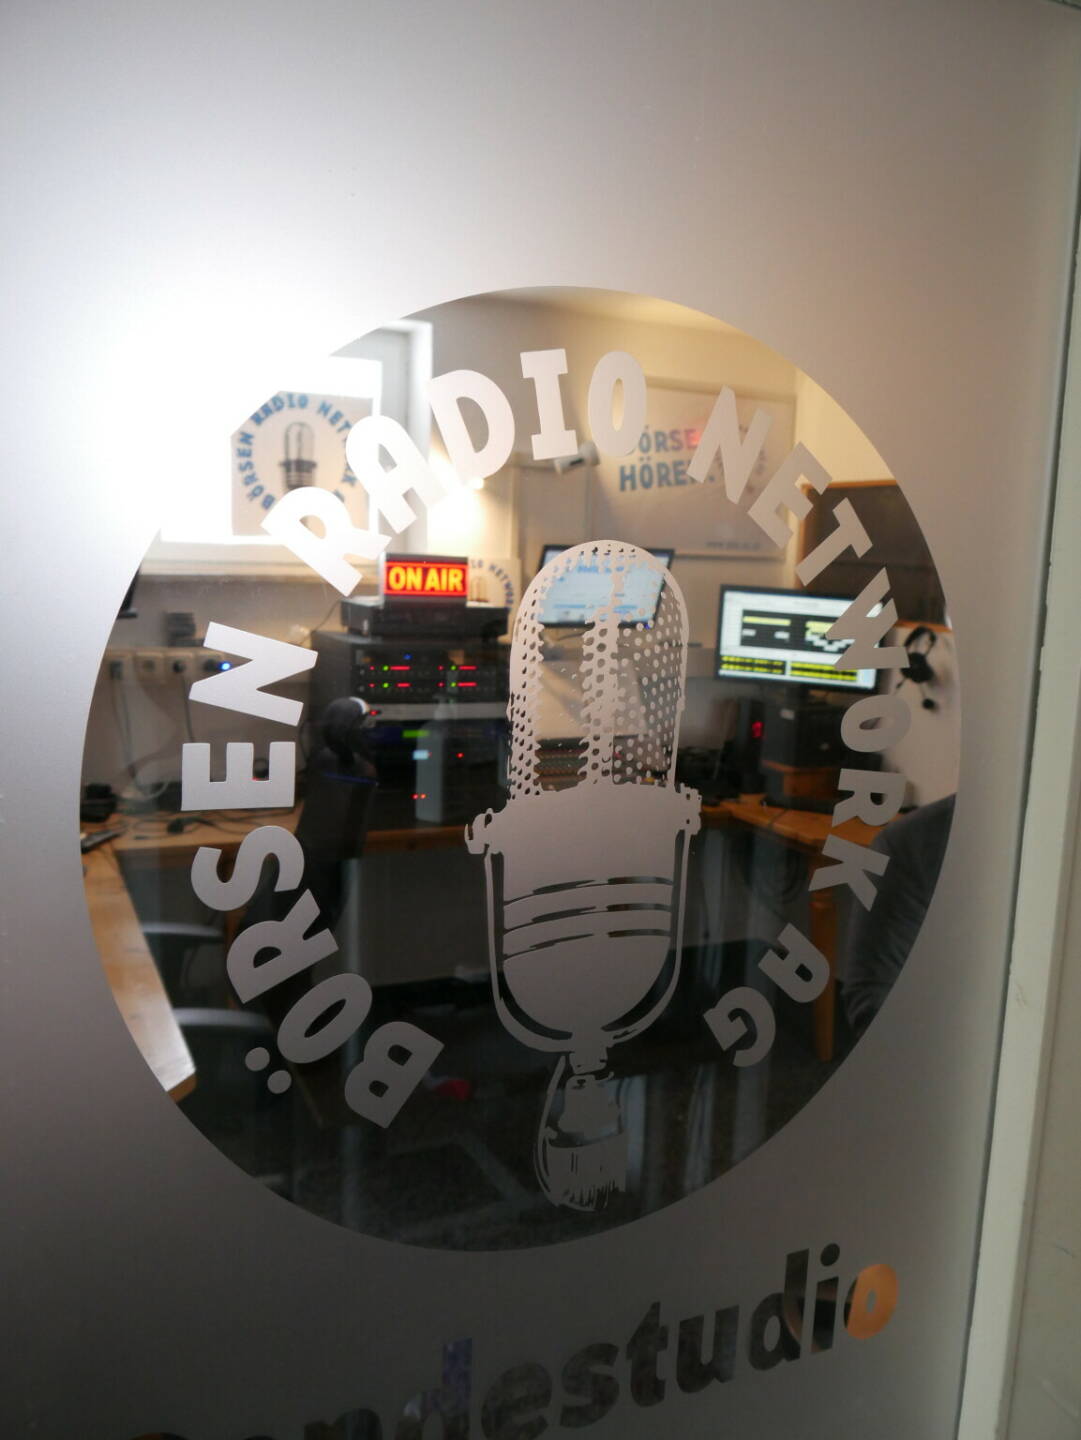 Die Börsen Radio Network AG interviewt regelmäßig heimische Vorstände und IR-Manager, Credit: Börsen Radio Network AG